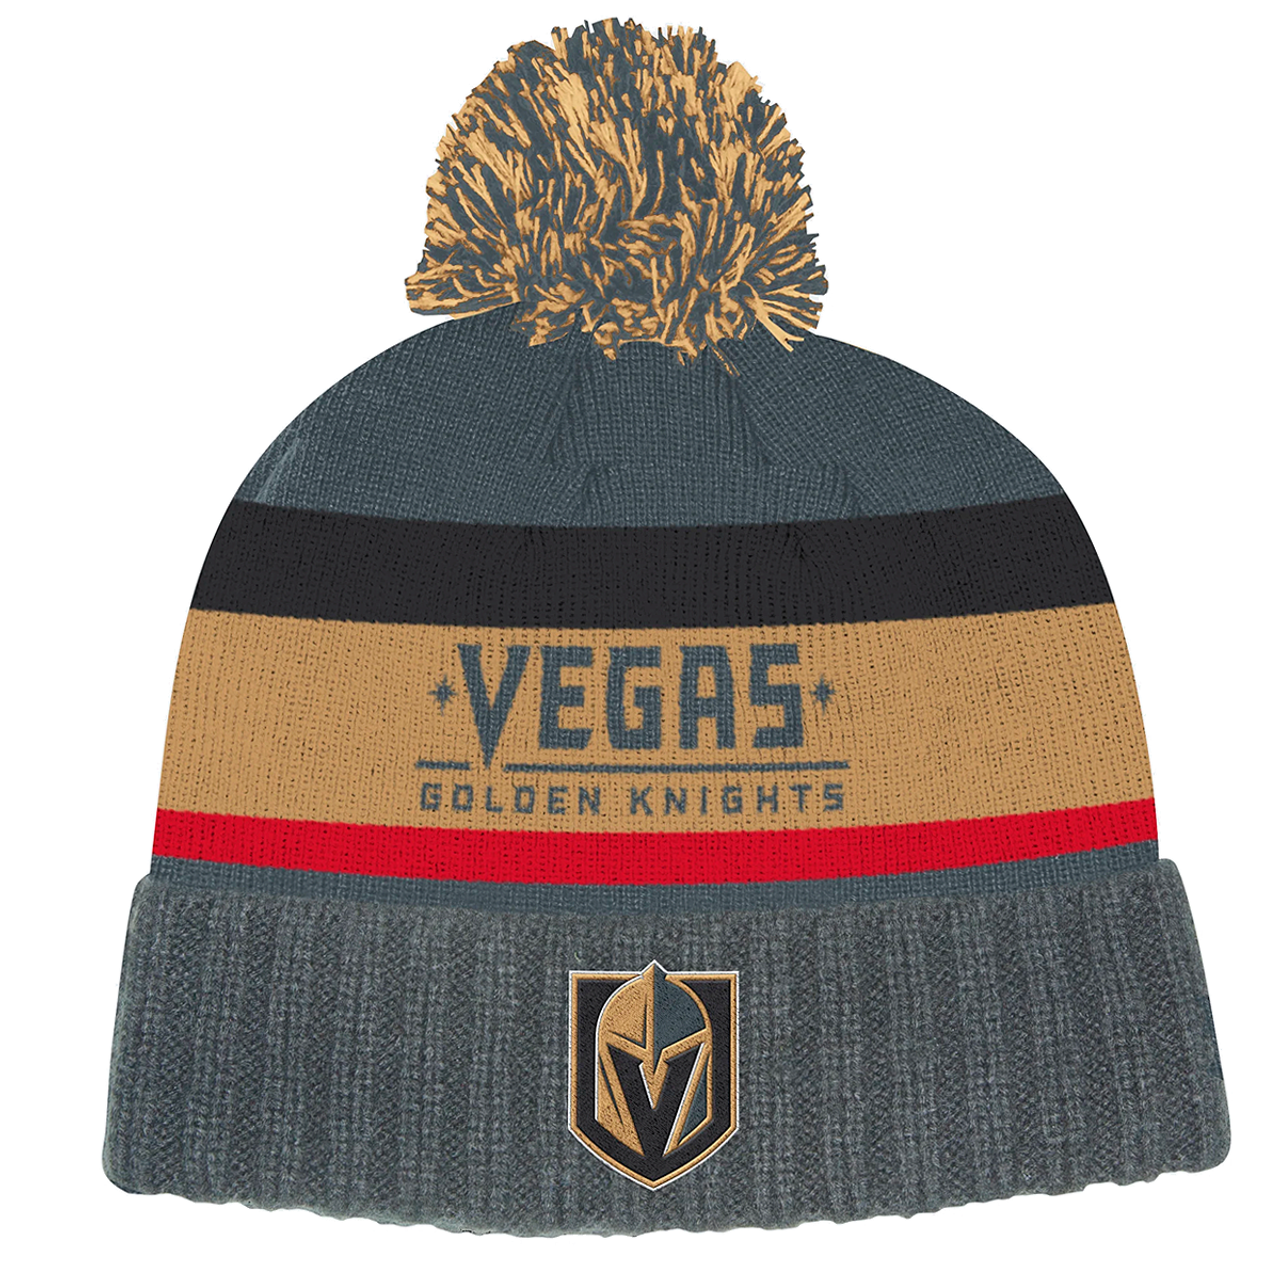 Las Vegas Golden Knights Adidas NHL SnapBack hat